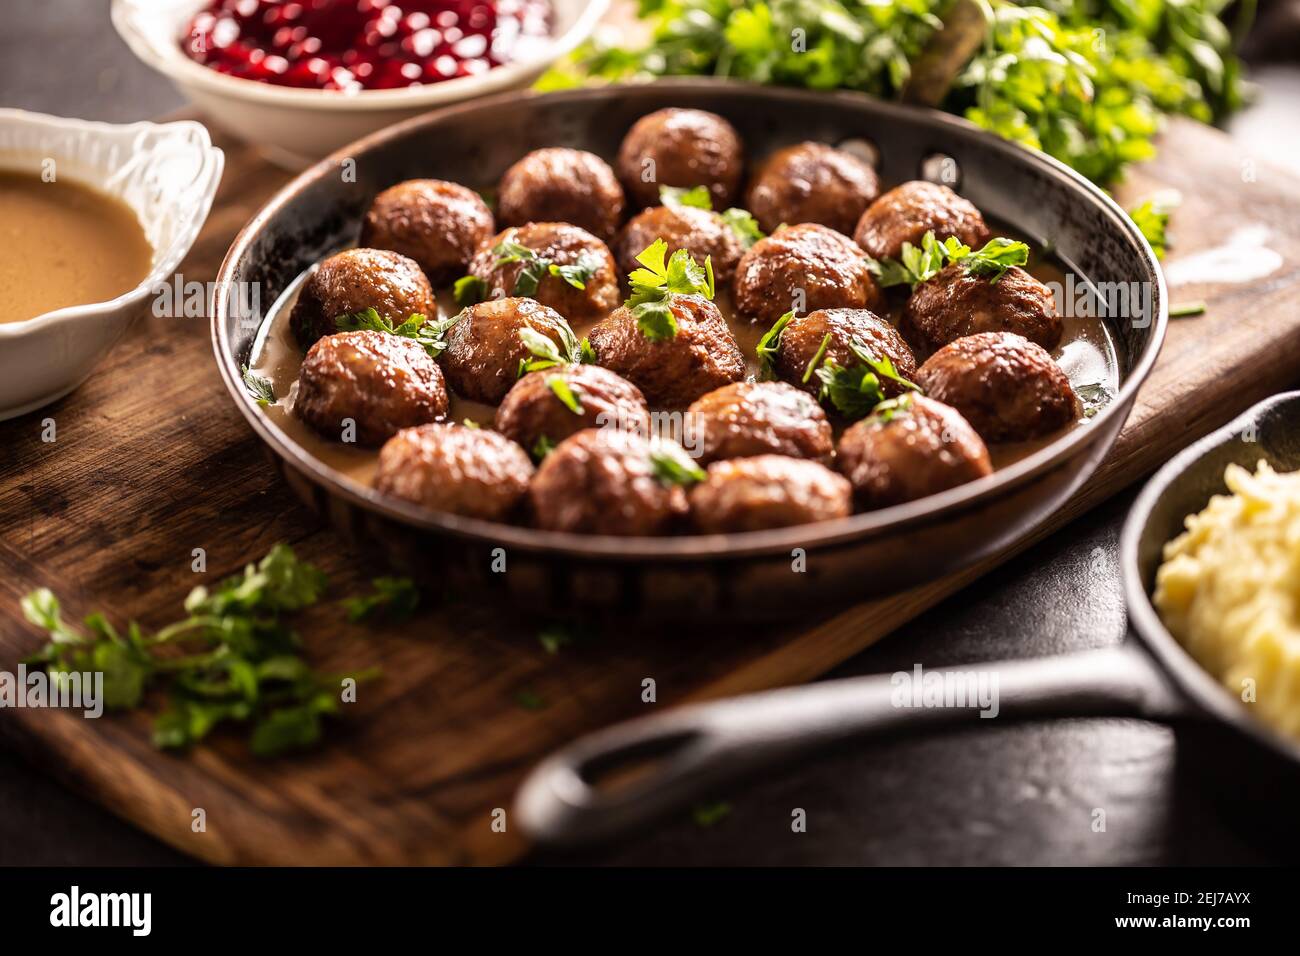 Boulettes de viande suédoises, kottbullar, dans une casserole recouverte de persil frais. Banque D'Images